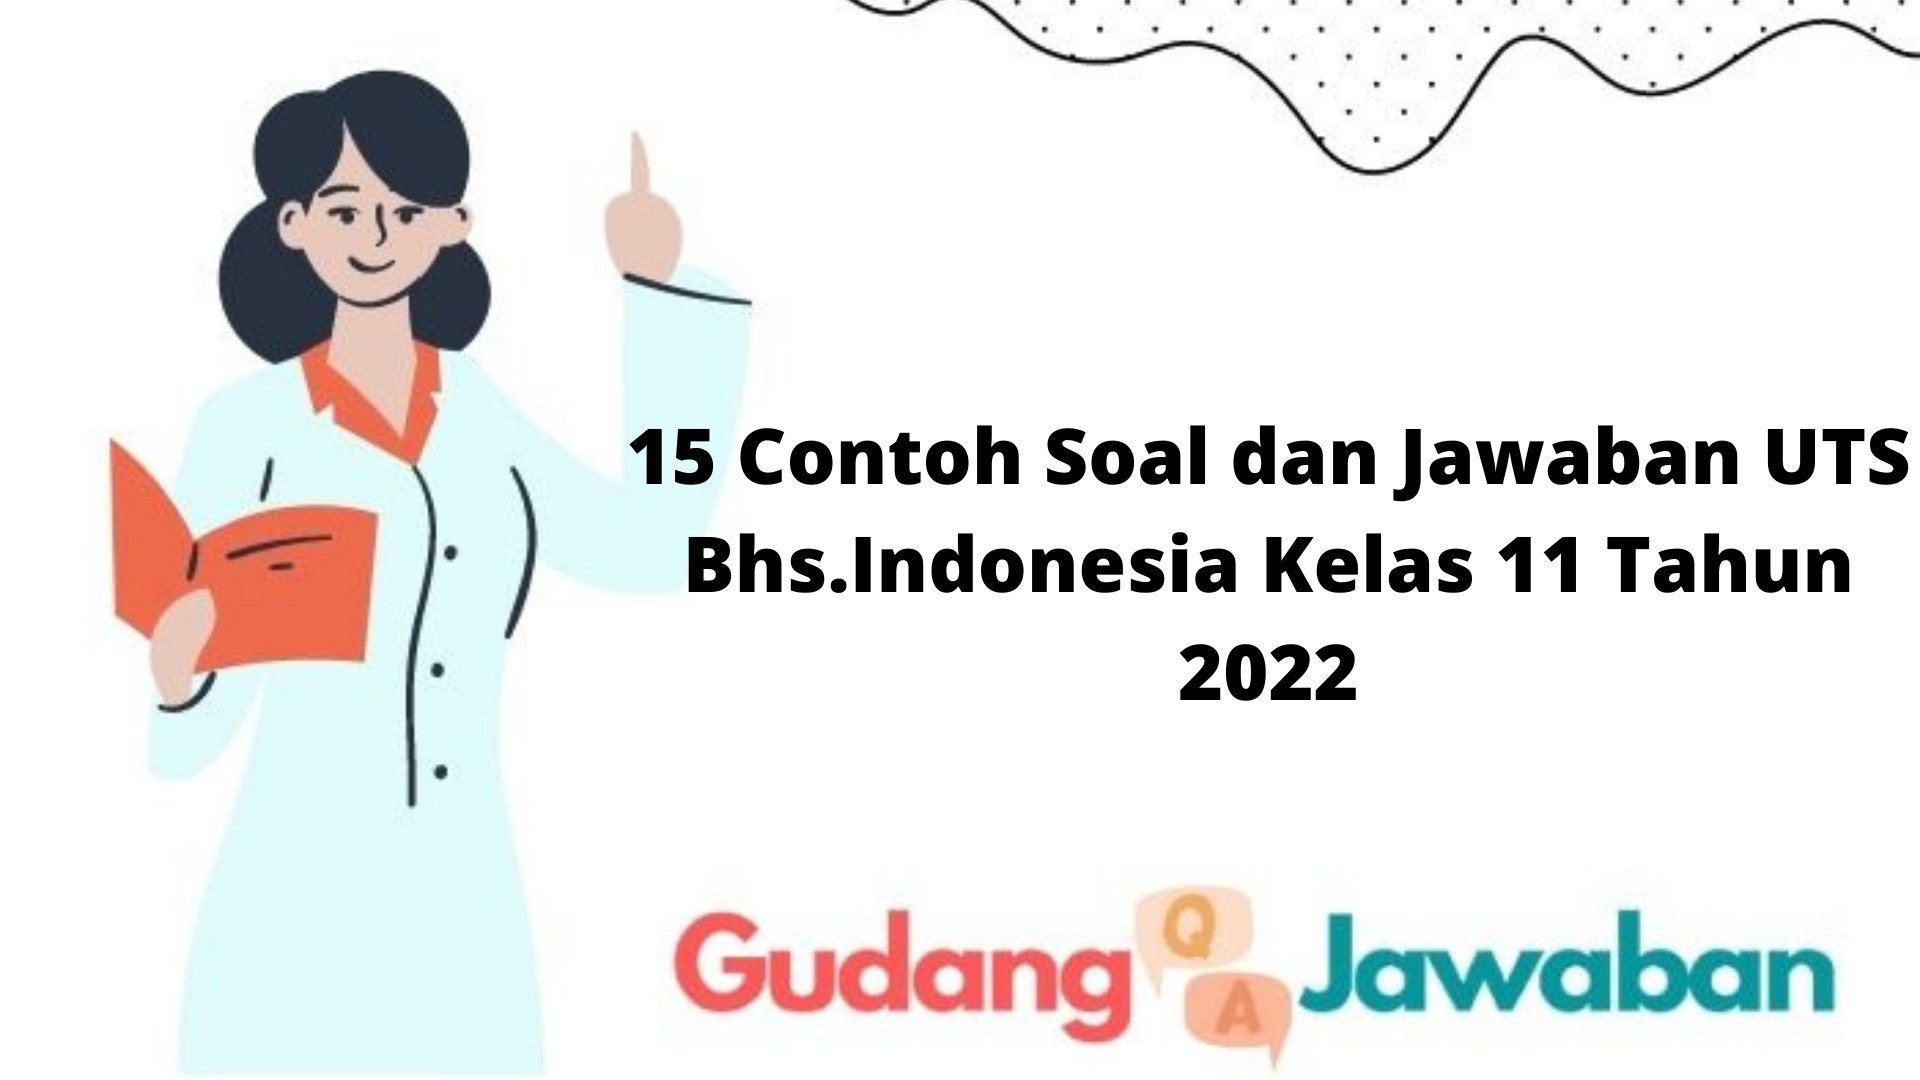 15 Contoh Soal dan Jawaban UTS Bhs.Indonesia Kelas 11 Tahun 2022